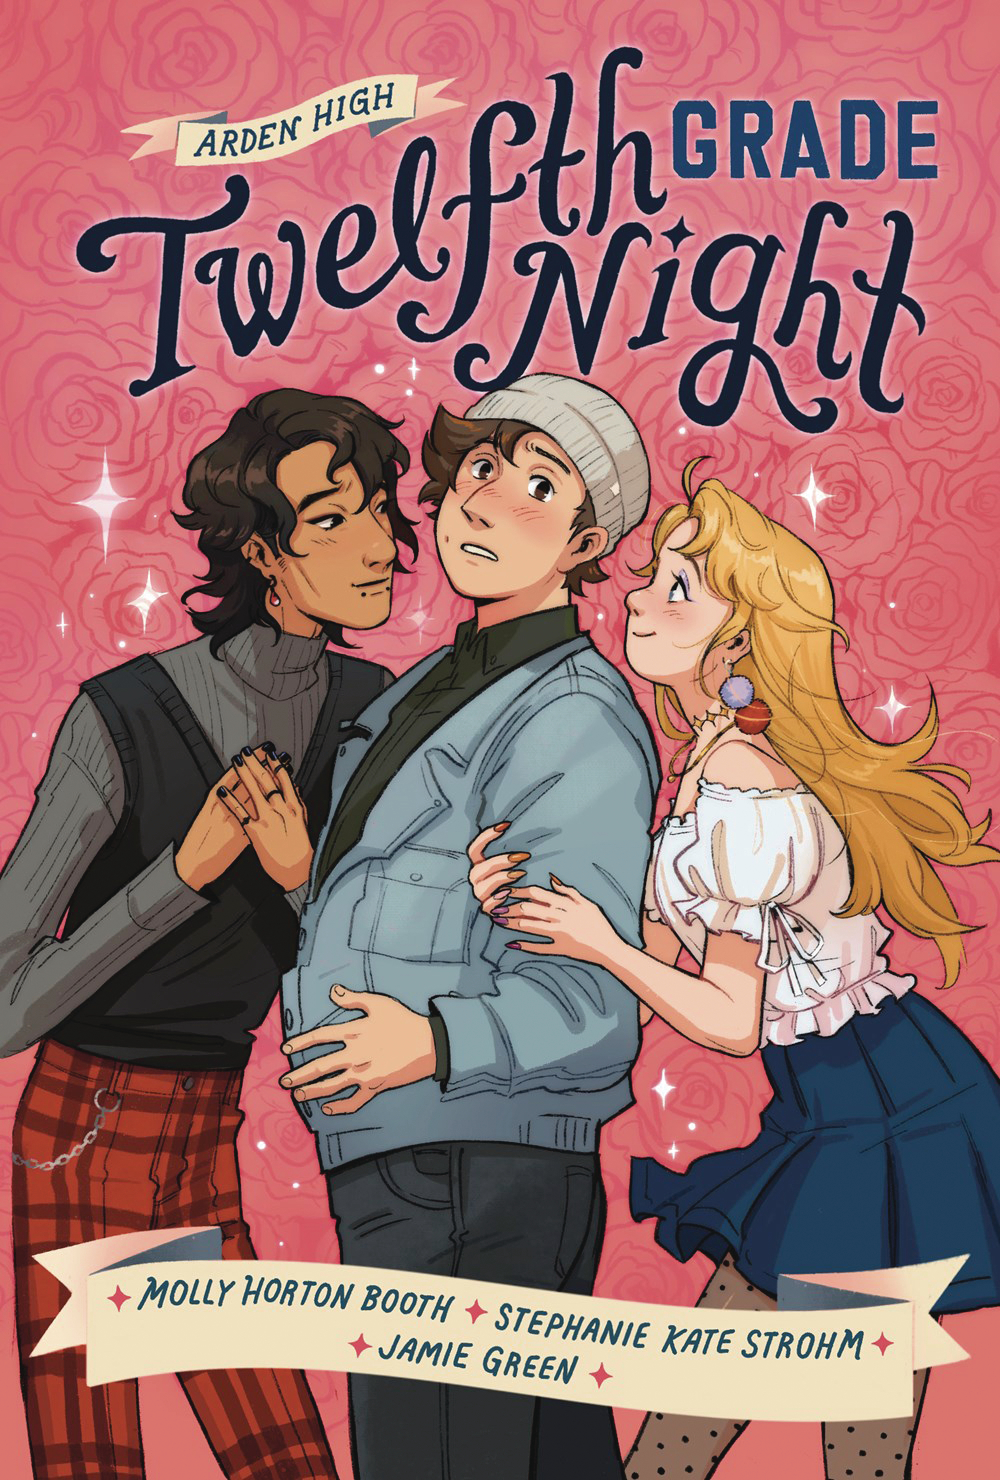 Arden High Graphic Novel Volume 1 Twelfth Grade Night